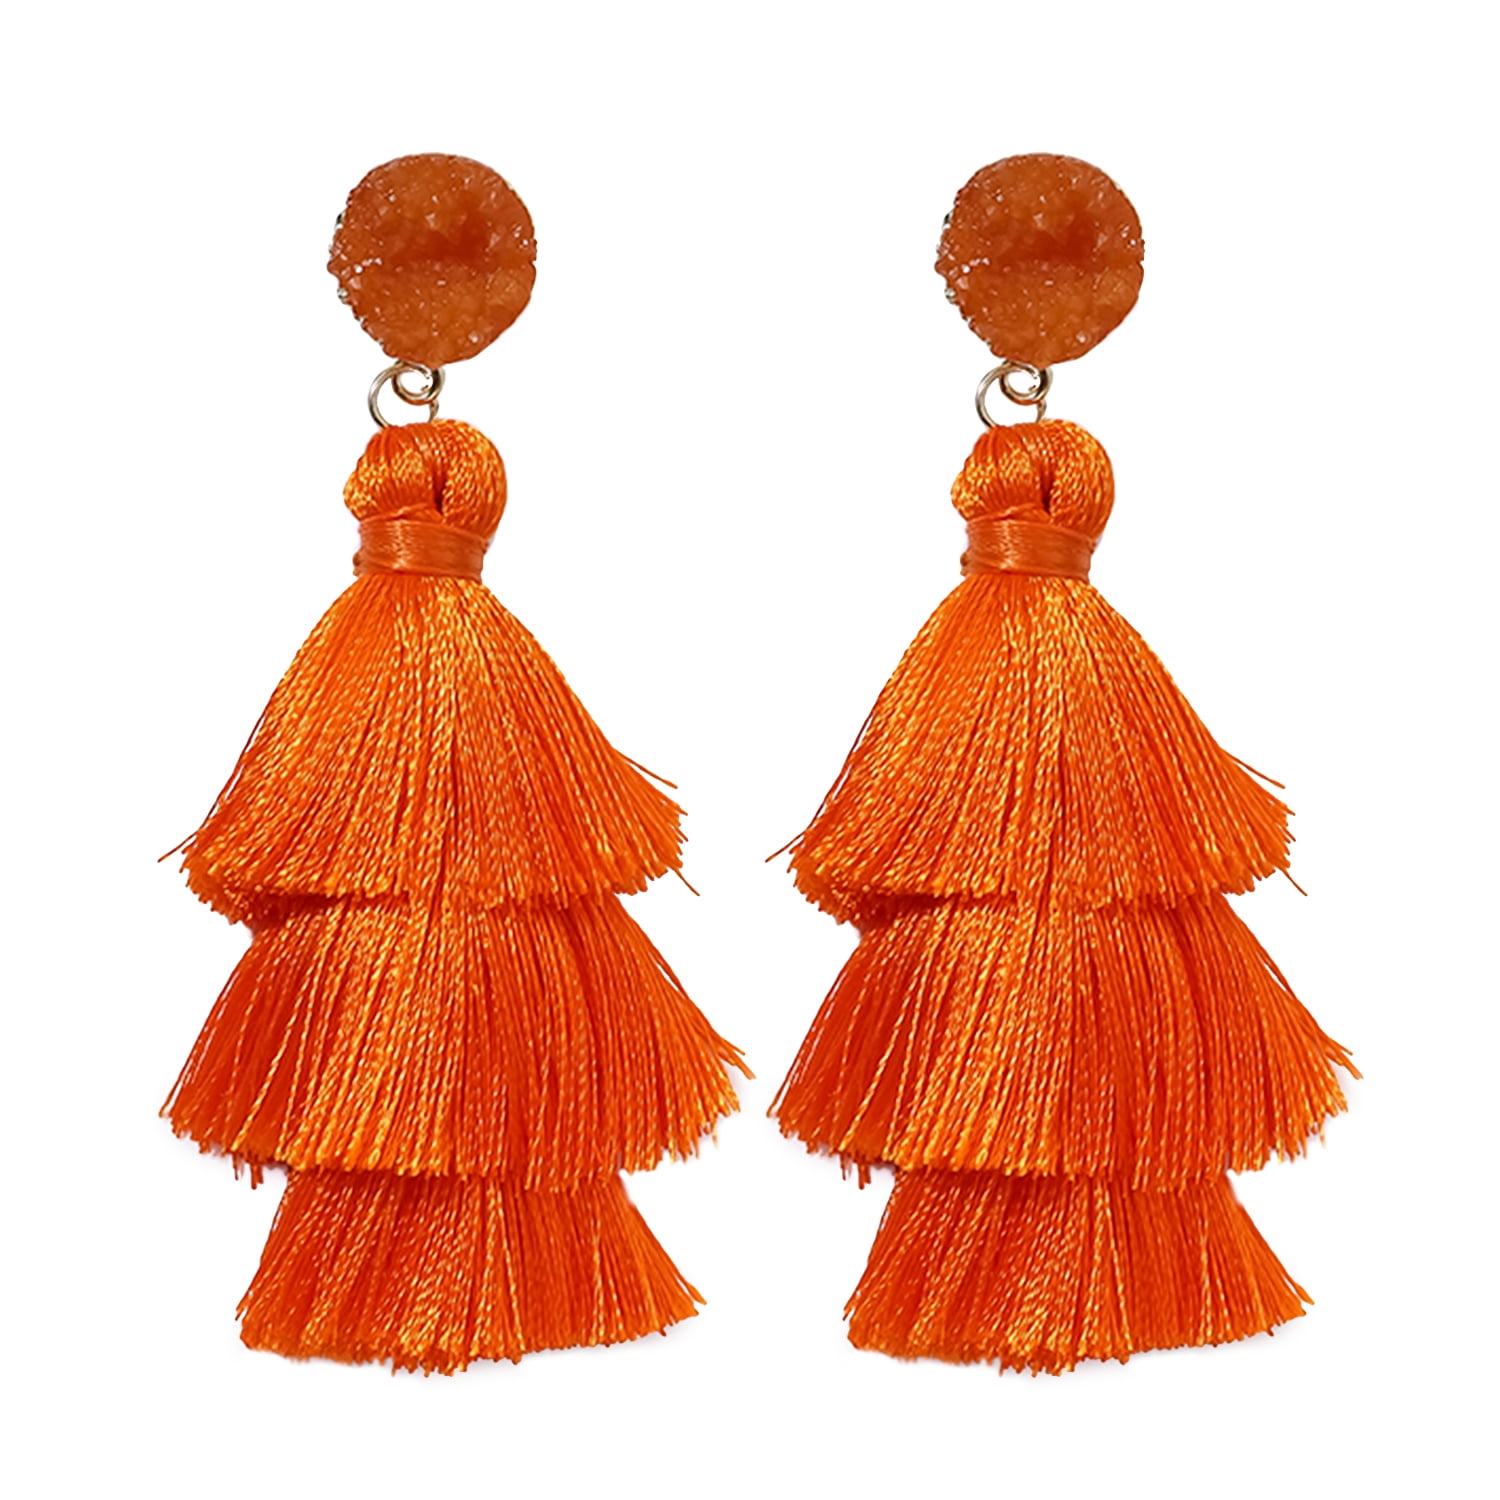 Orange Tassel Earrings for Women | Colorful Layered Tassle 3 Tier Bohemian Earrings | Dangle Drop Earrings for Women Gifts